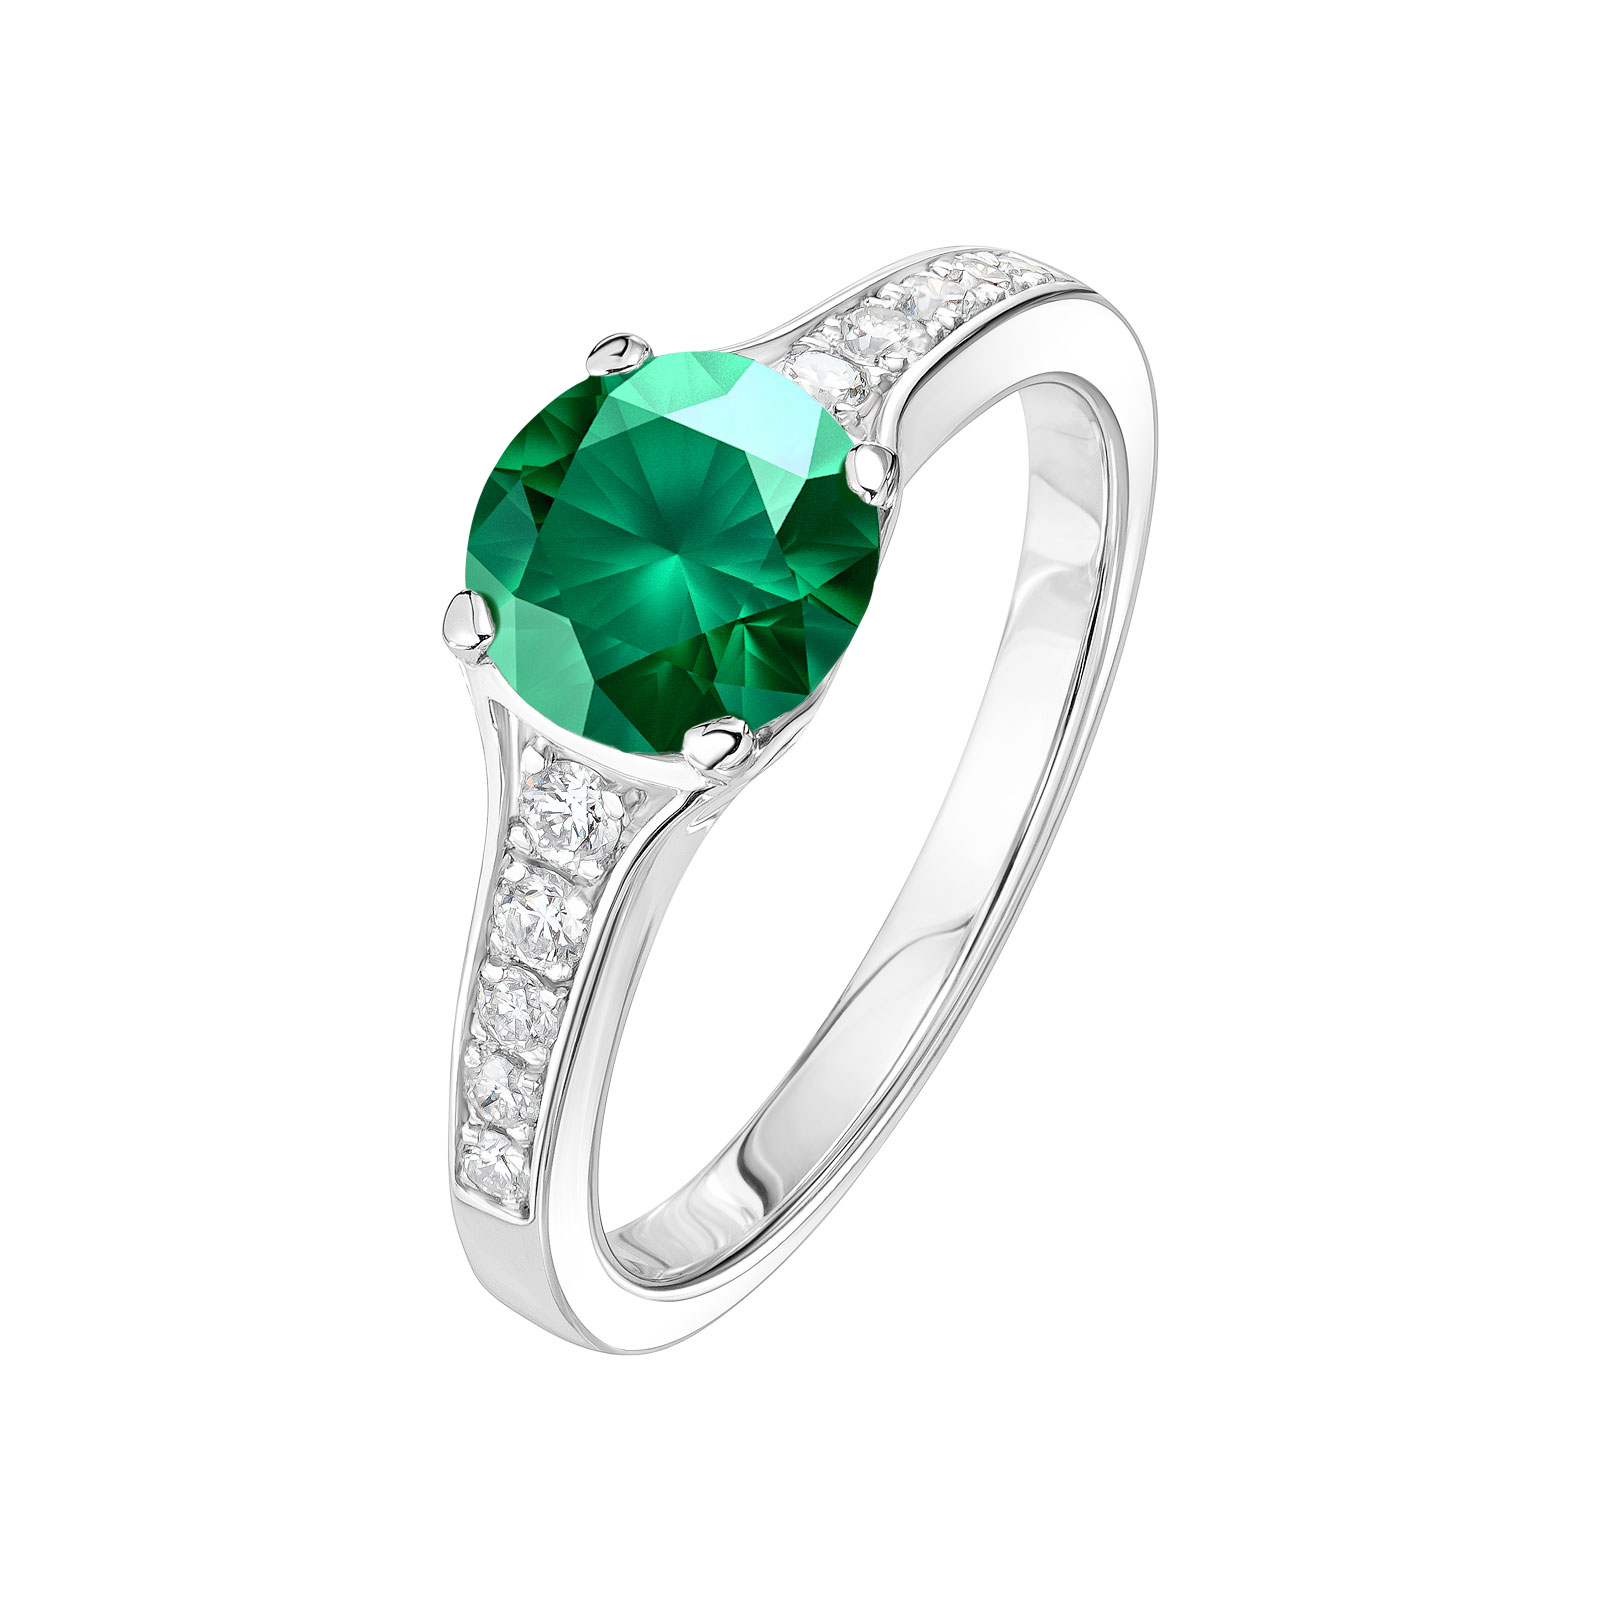 Ring White gold Emerald and diamonds Victoria 1